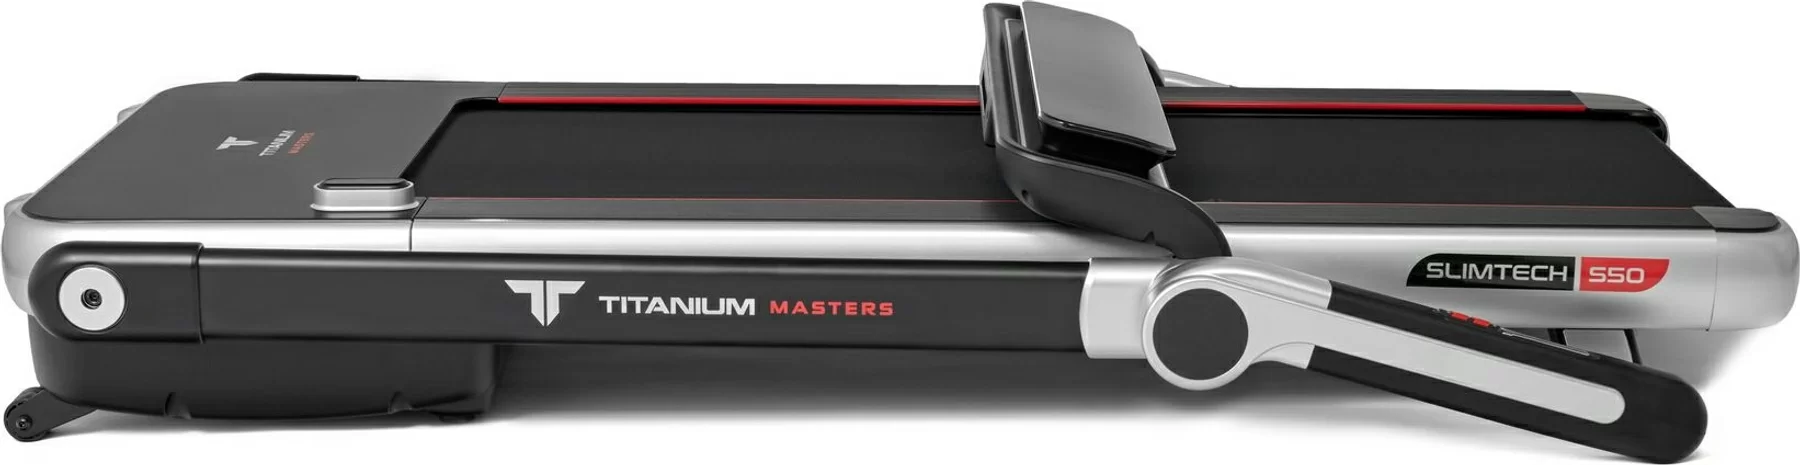 Реальное фото Беговая дорожка Titanium Masters Slimtech S50 от магазина СпортЕВ